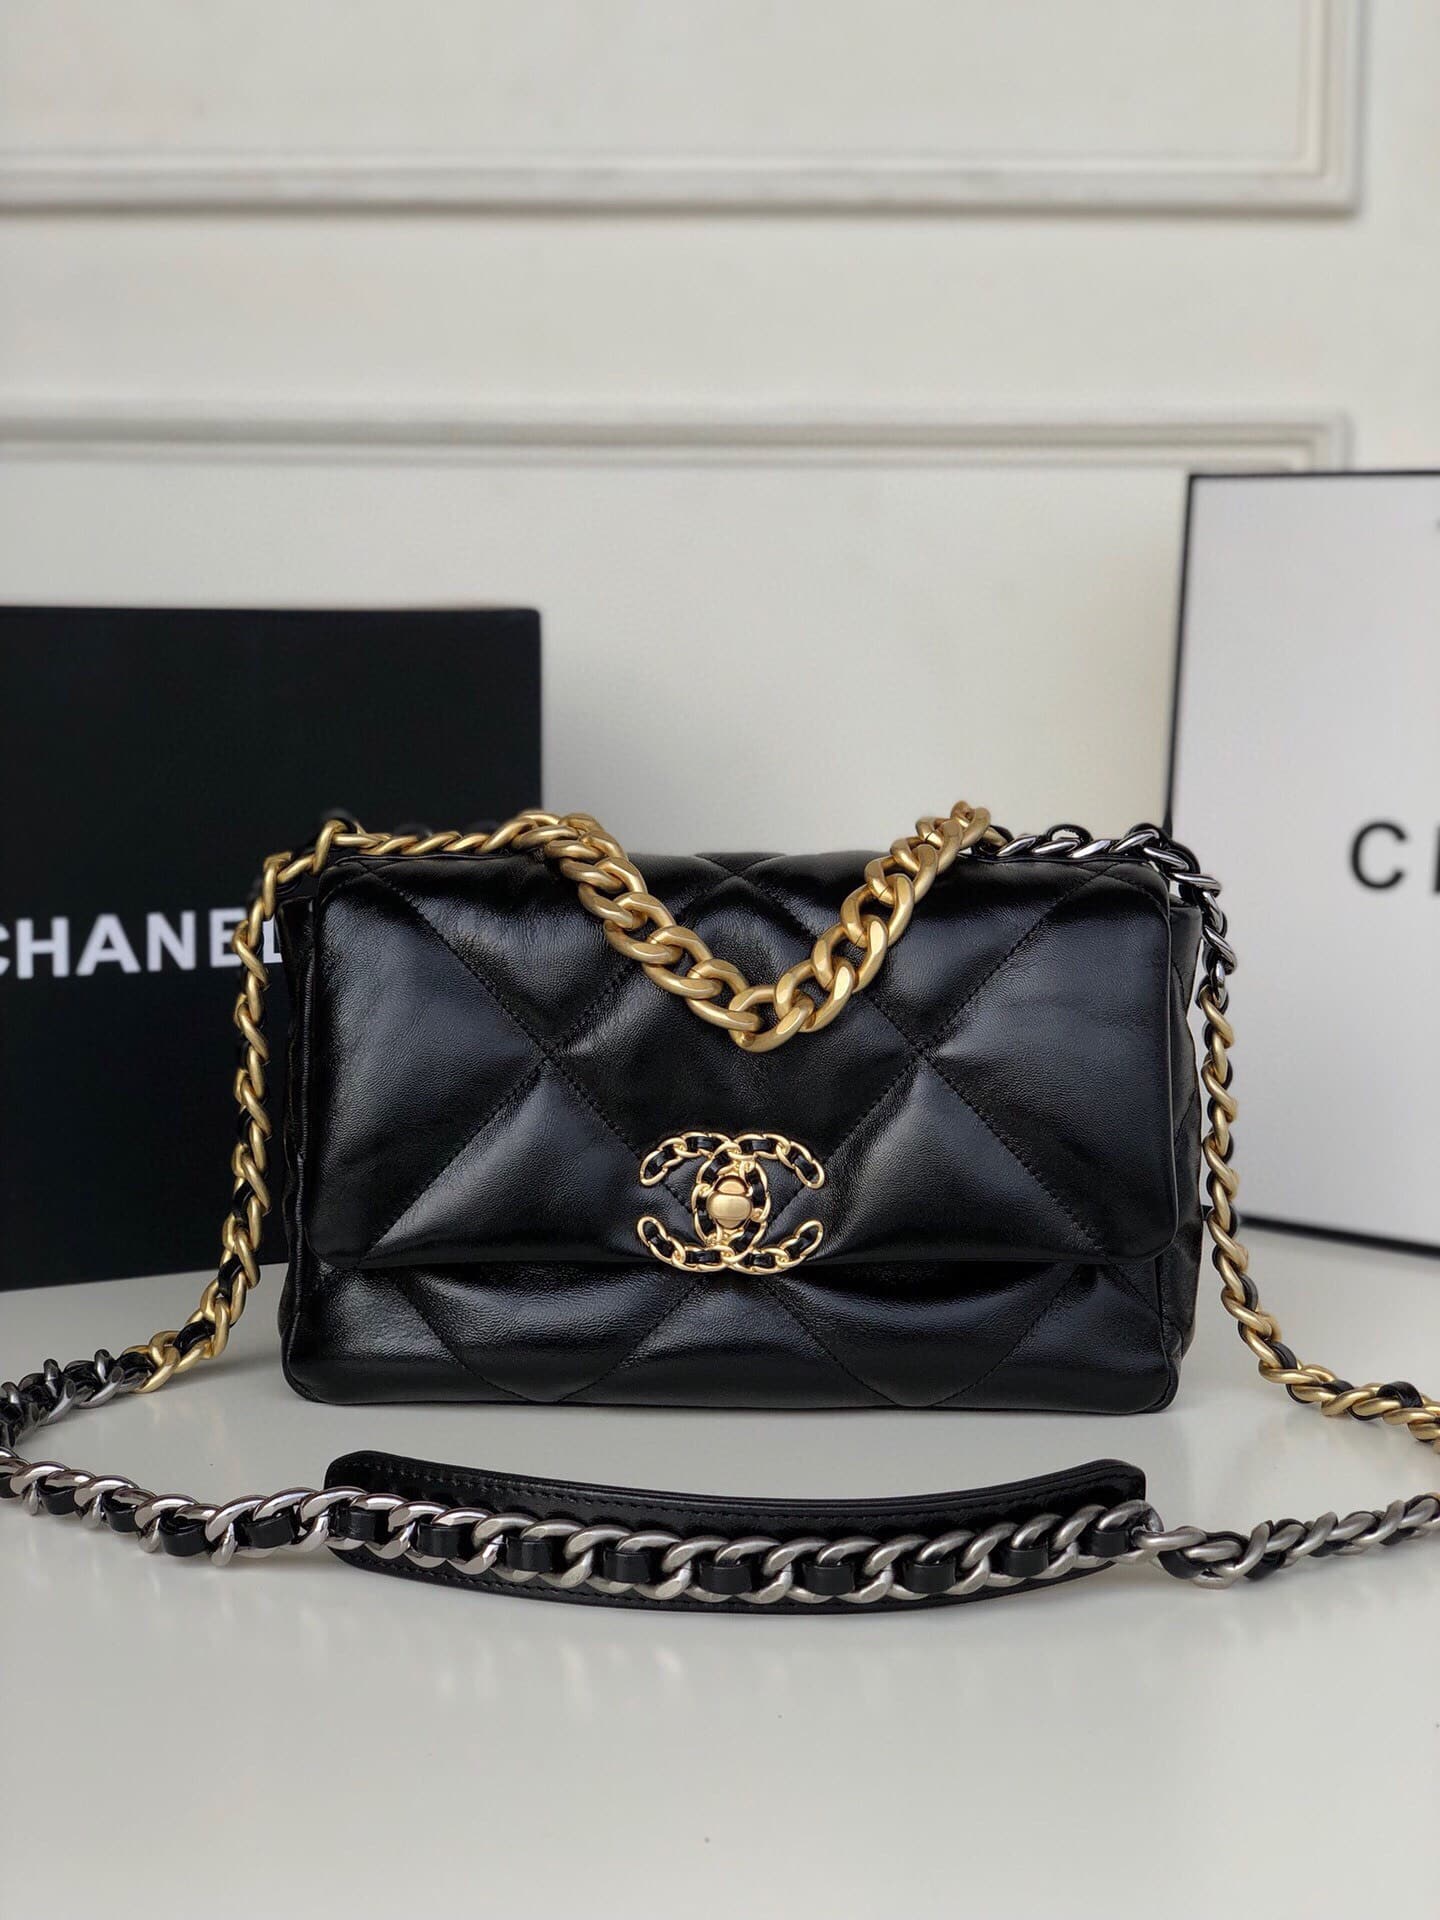 Black Chanel 19 Flap Bag Satchel  Designer Revival